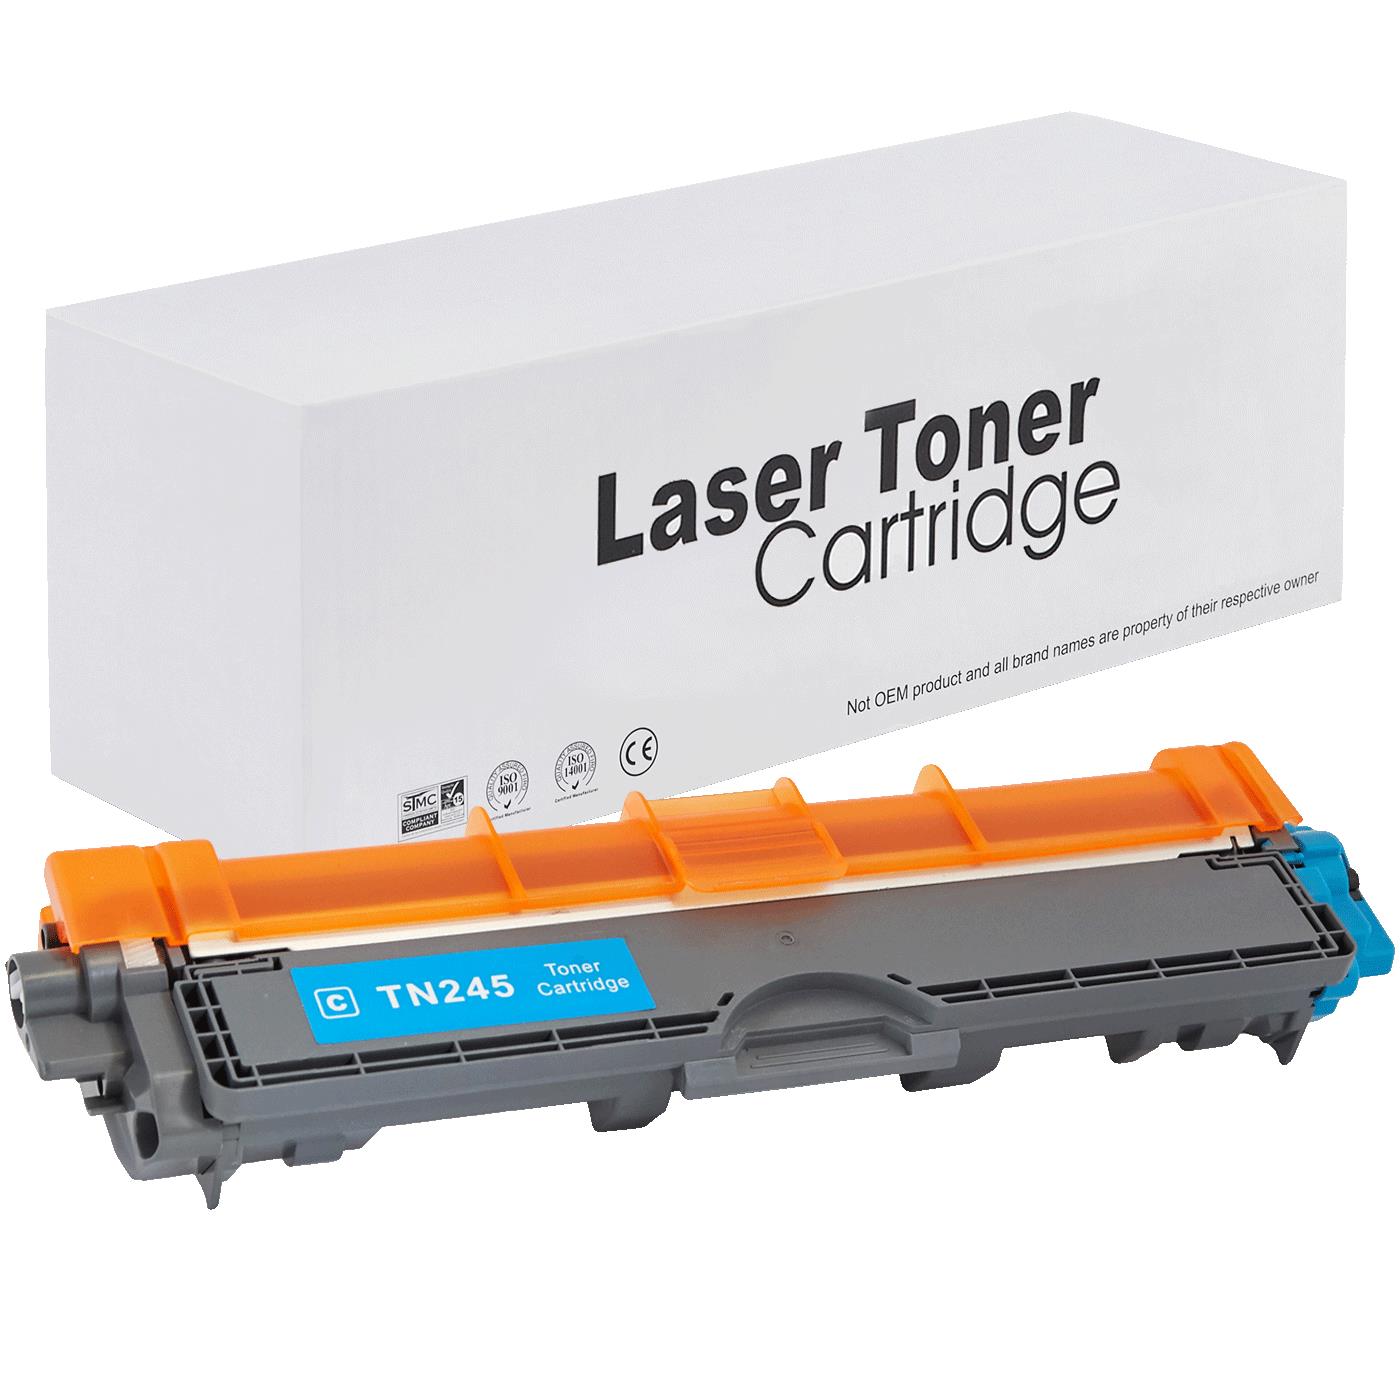 съвместима тонер касета за принтери и печатащи устройства на Brother MFC-9140 CDN Toner BR-245C | TN245C / TN241C. Ниски цени, прецизно изпълнение, високо качество.